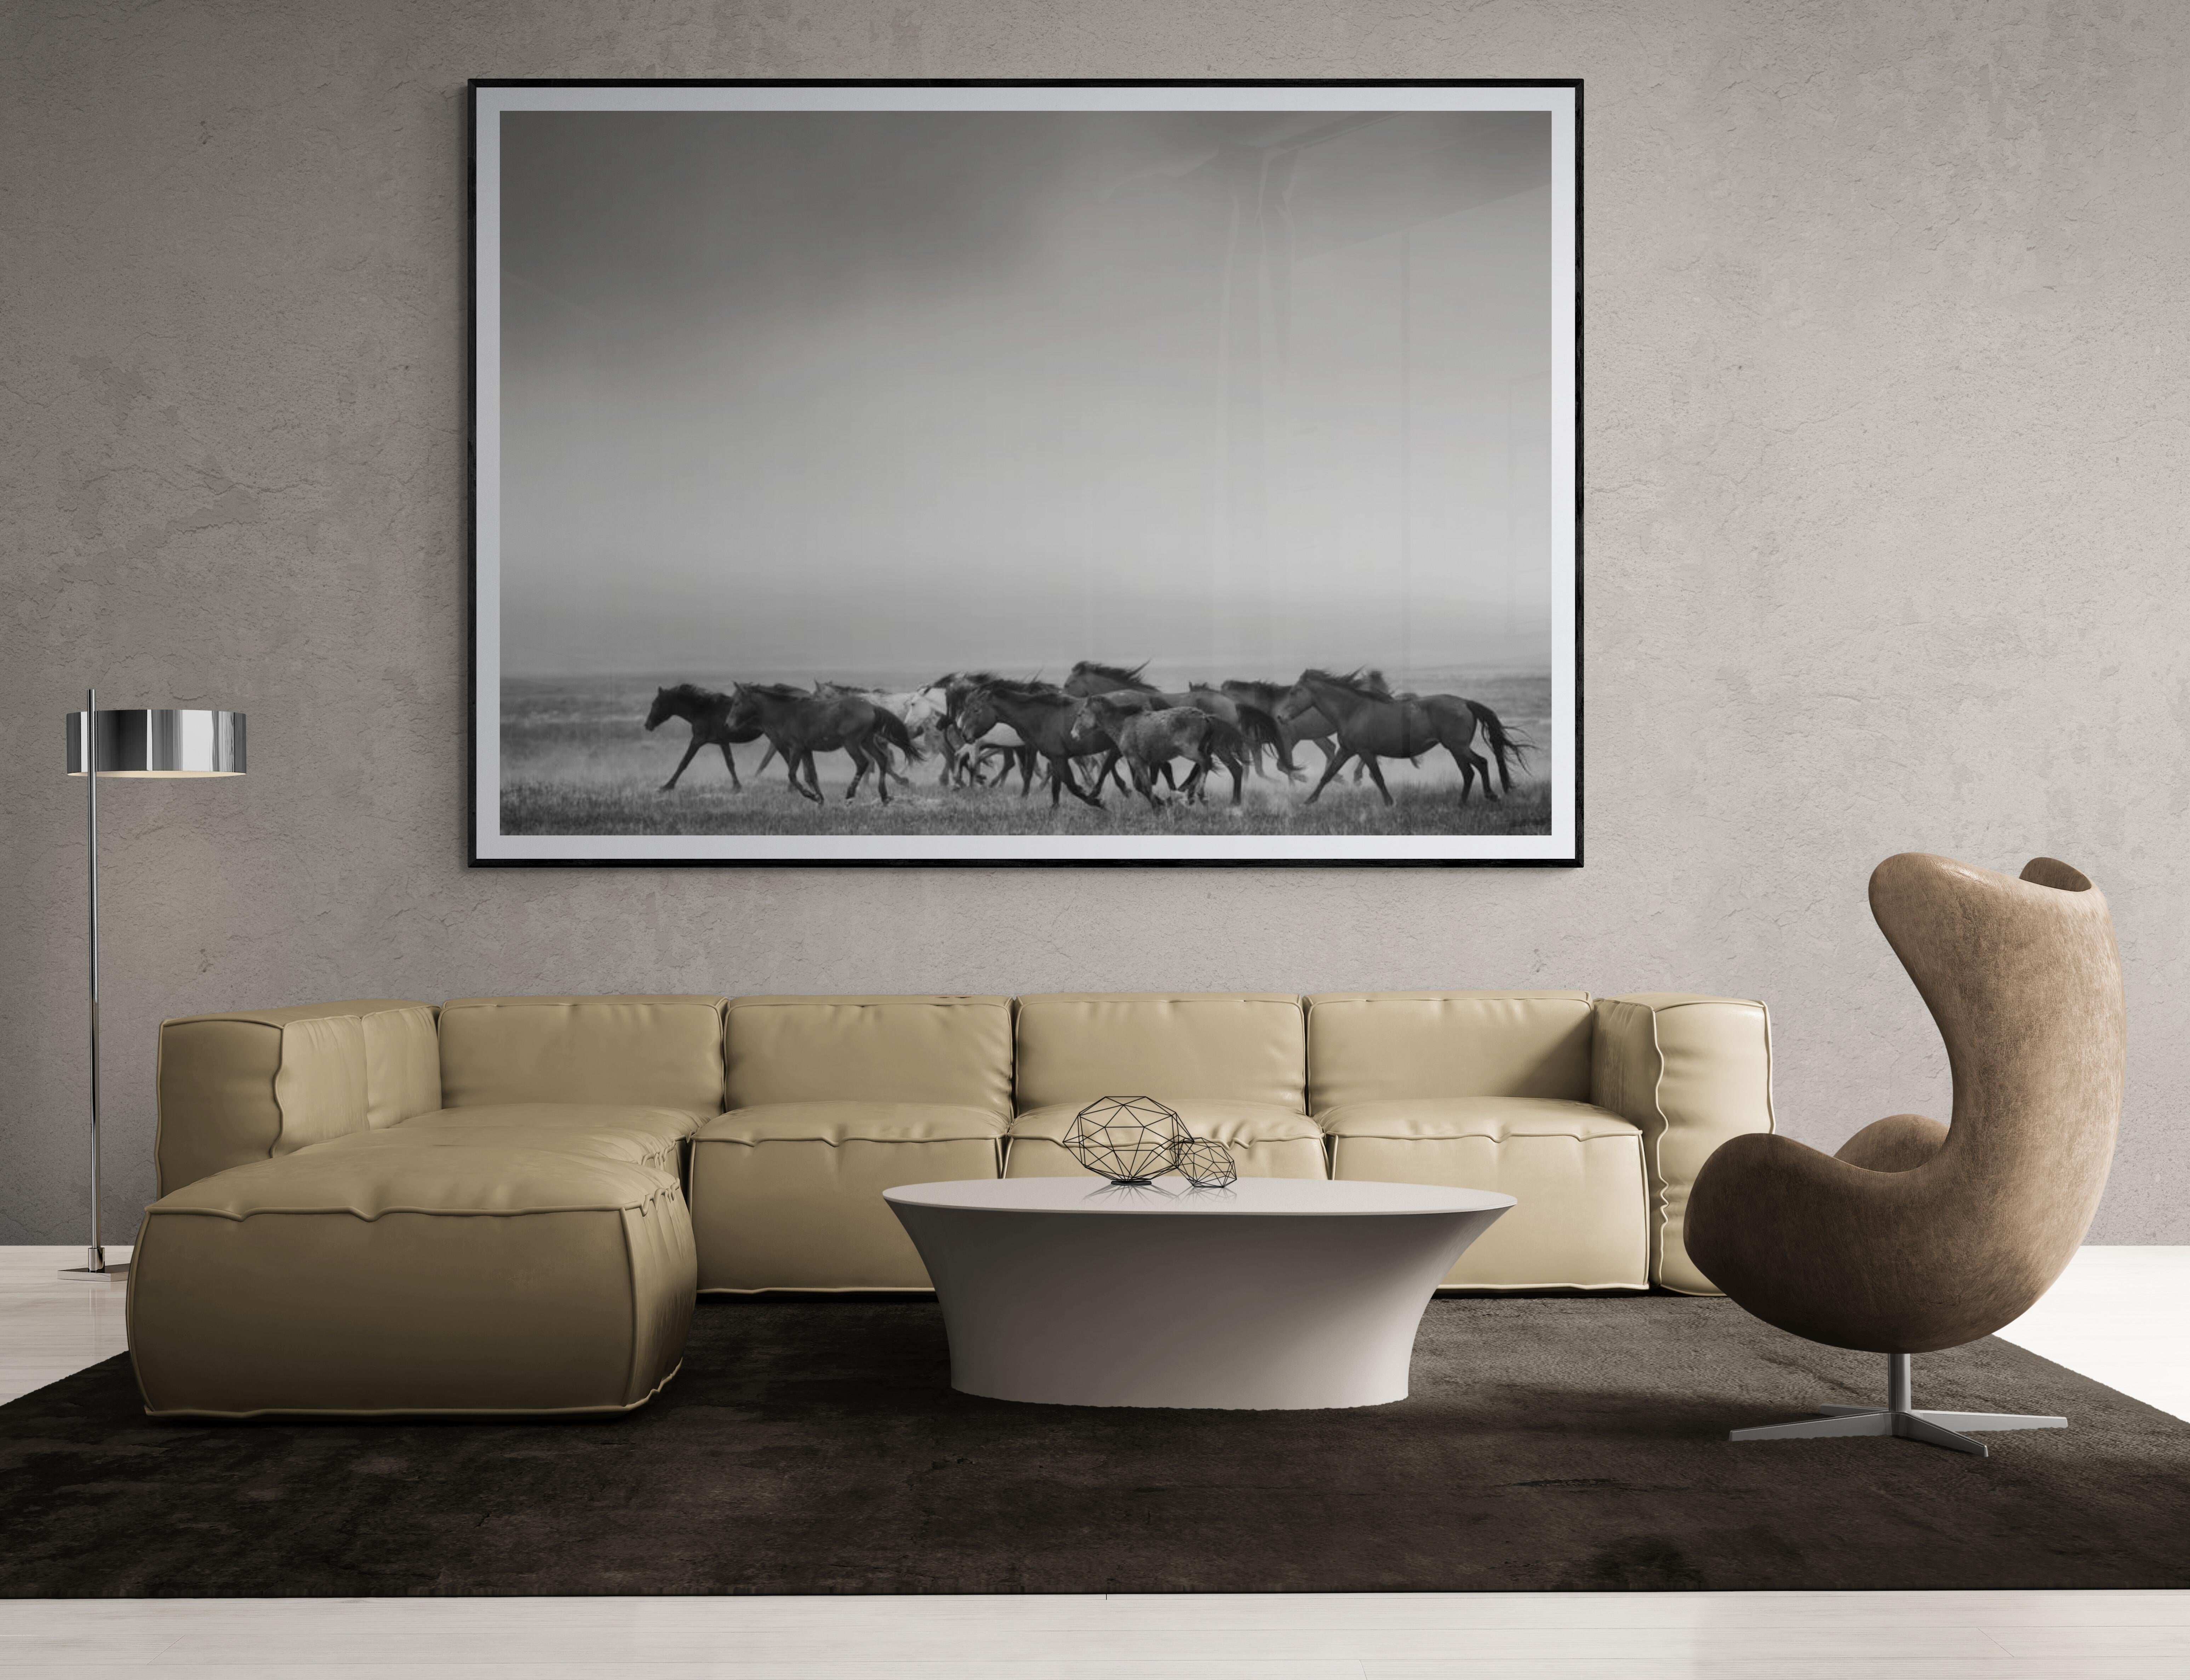 Il s'agit d'une photographie en noir et blanc de Mustangs sauvages américains réalisée par Shane Russeck. 
Imprimé sur du papier d'archives avec de l'encre d'archives.
Édition numérotée et signée de 5 exemplaires

 Shane Russeck s'est forgé une